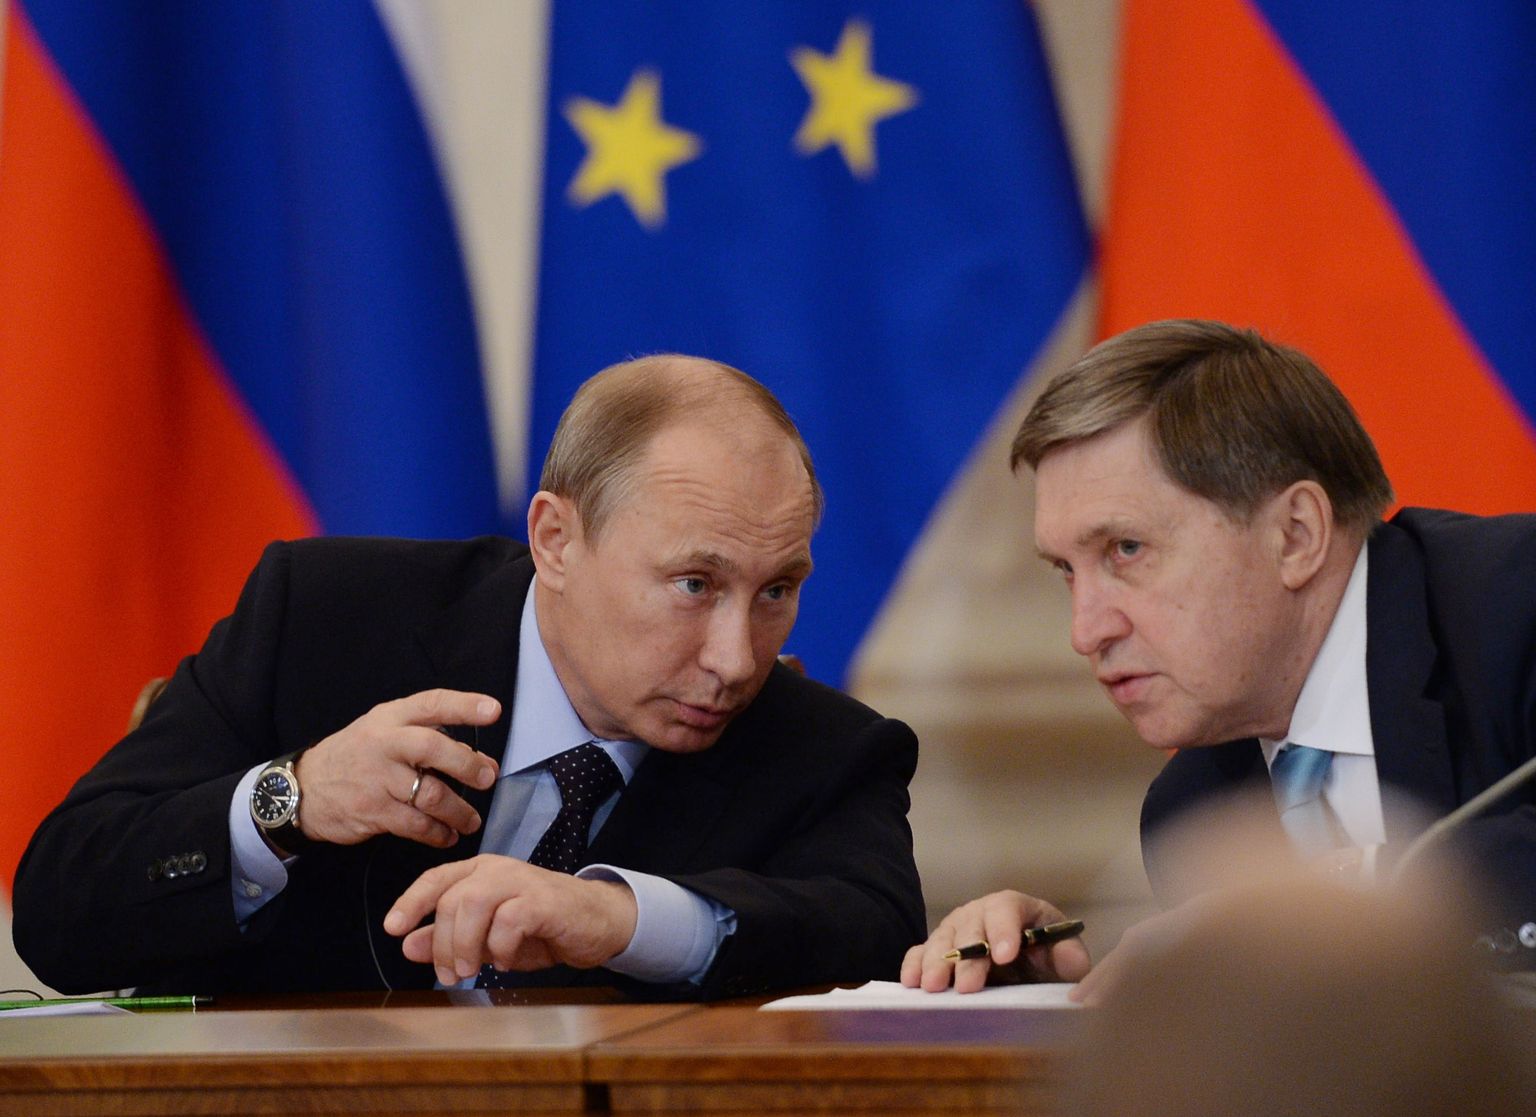 Venemaa president Vladimir Putin (vasakul) koos Juri Ušakoviga. Väidetavalt töötas CIA heaks luuranud Oleg Smolenkov varasemalt suursaadik Ušakovi alluvuses Washingtonis ning järgnes talle ka Moskvasse.